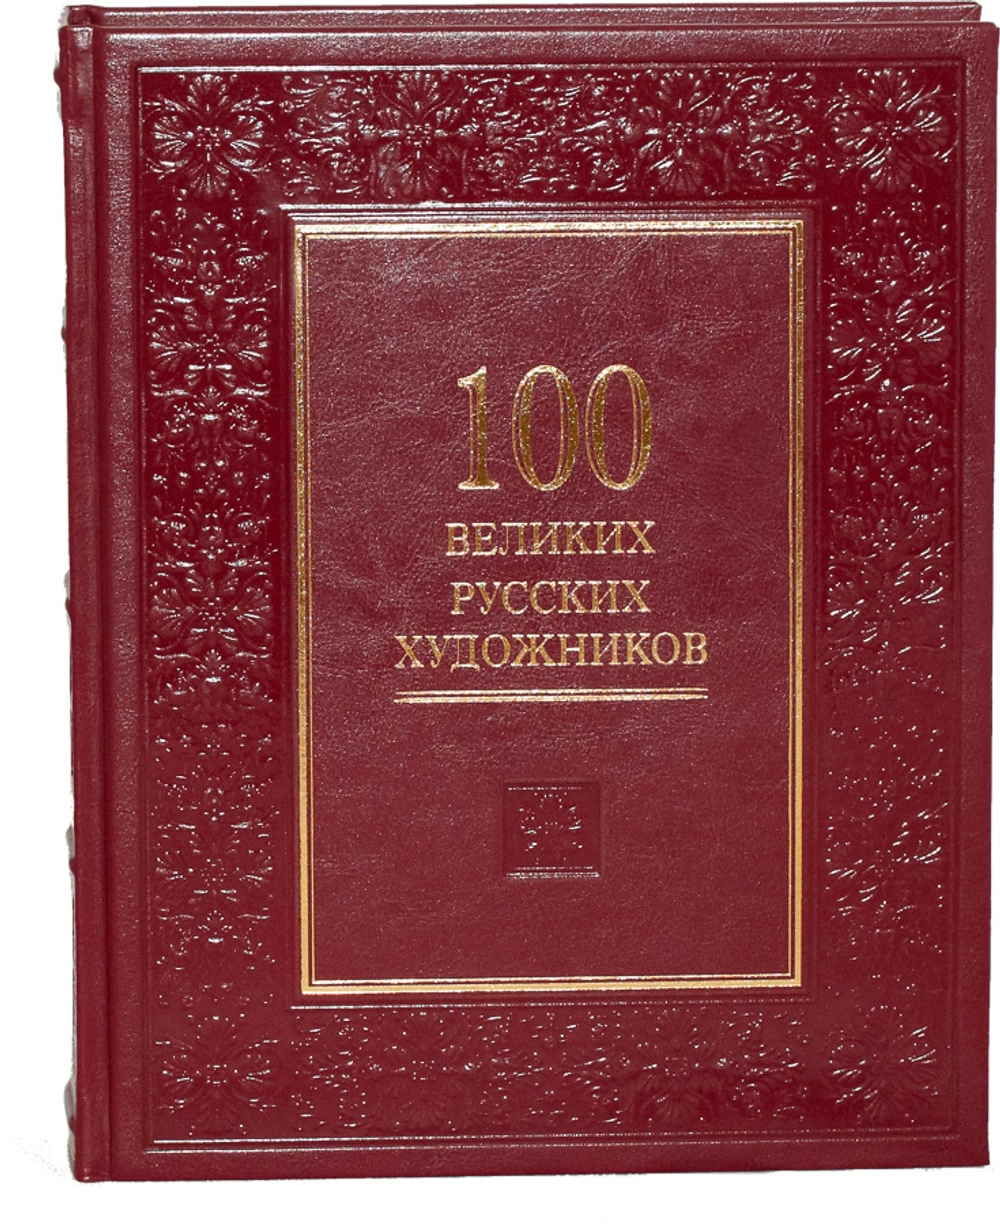 100 великих русских художников. Подарочная книга